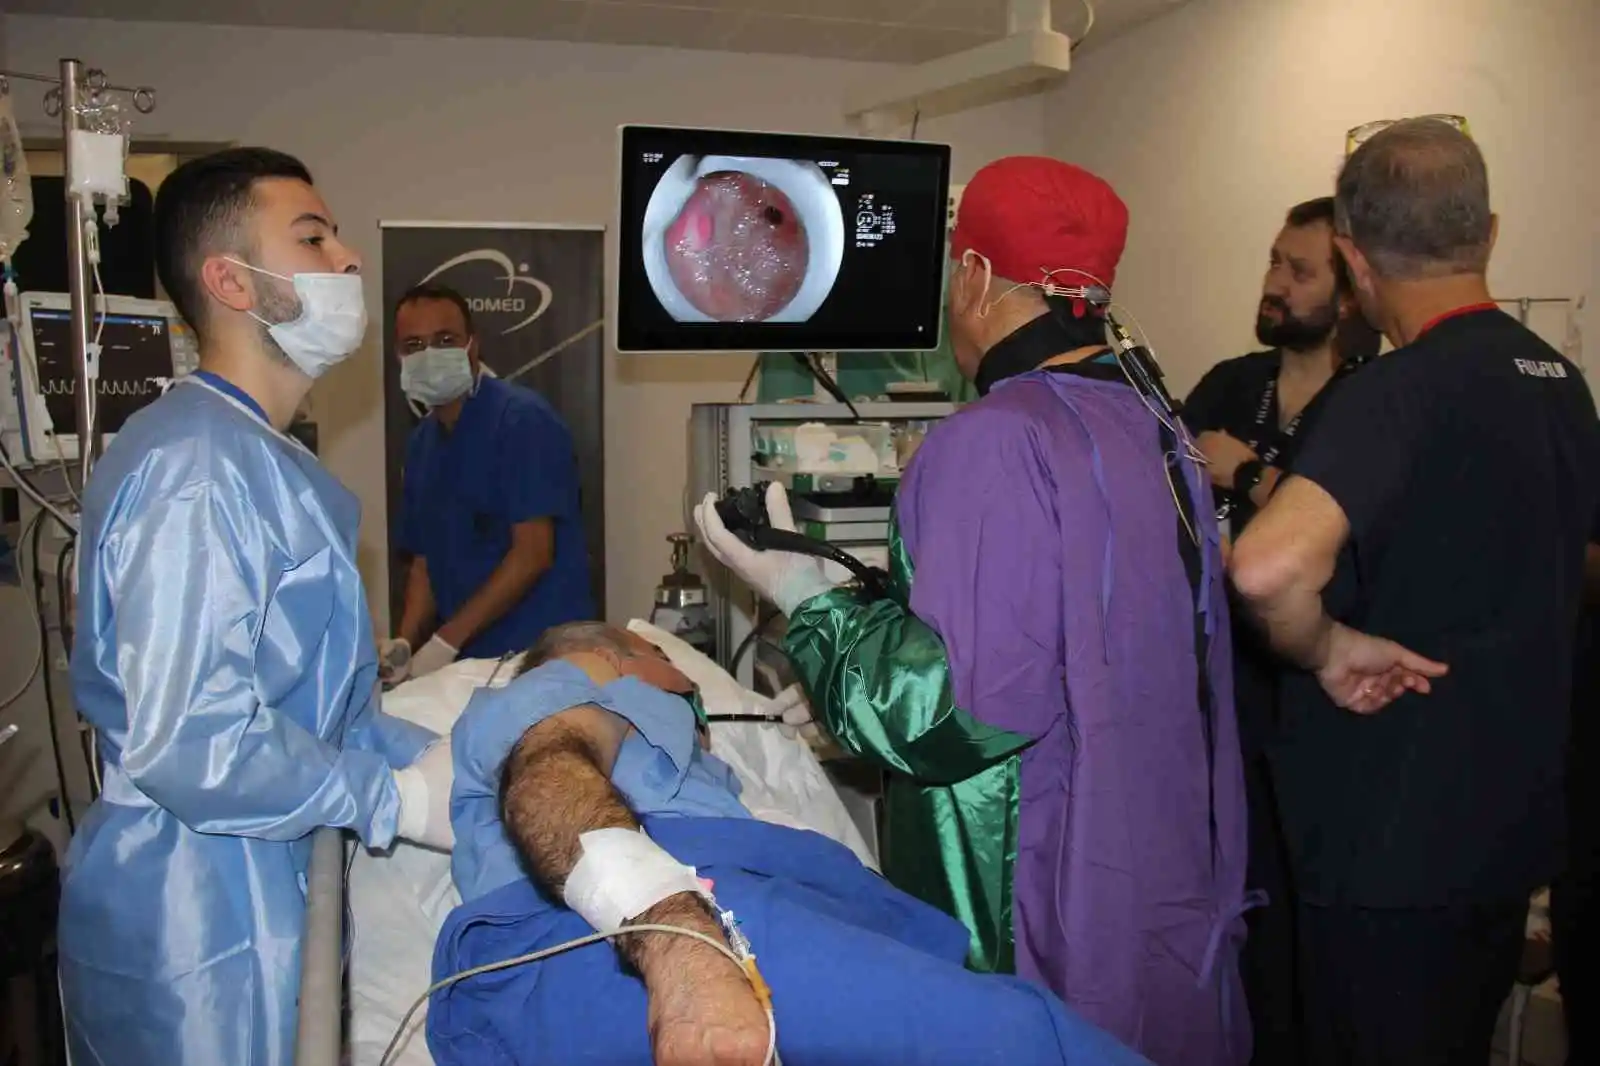 Canlı bağlantıyla Kocaeli'den Antalya'ya ameliyat ve operasyon eğitimi
